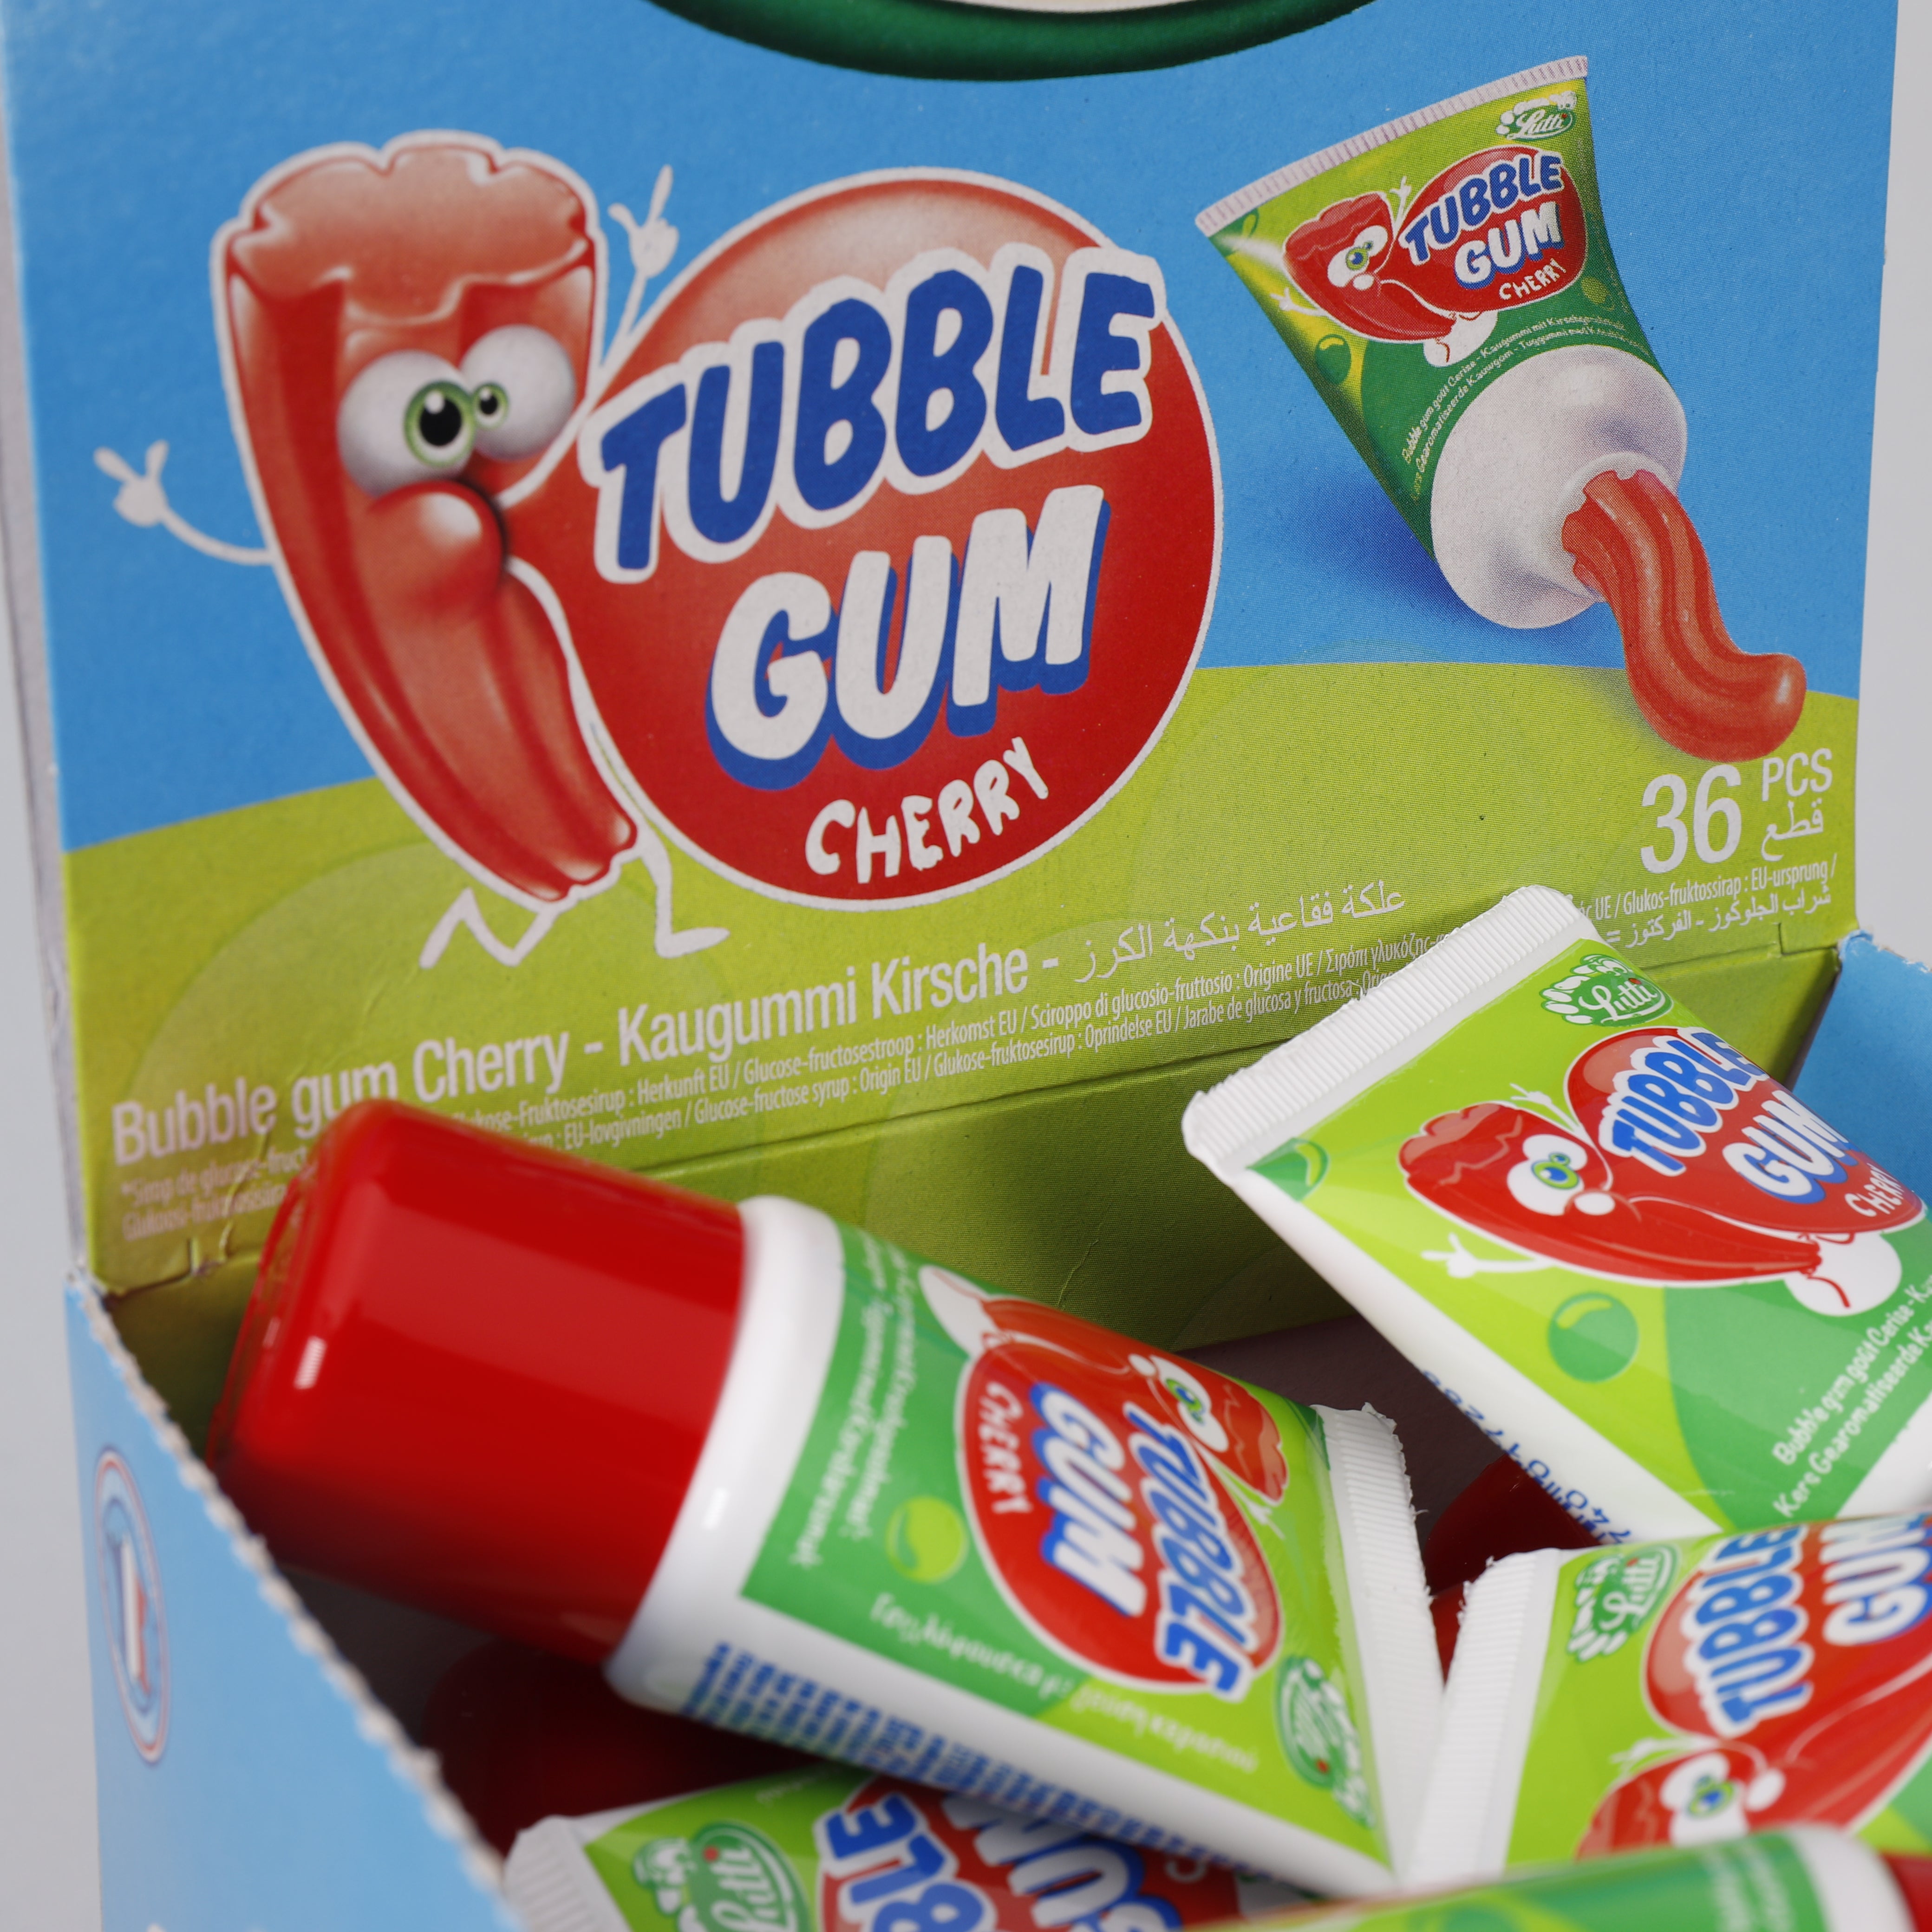 36 Stk. Cherry Gum Tubble Kaugummi in der Tube, 1,26 Kg, Halal, TOP Süßigkeiten.